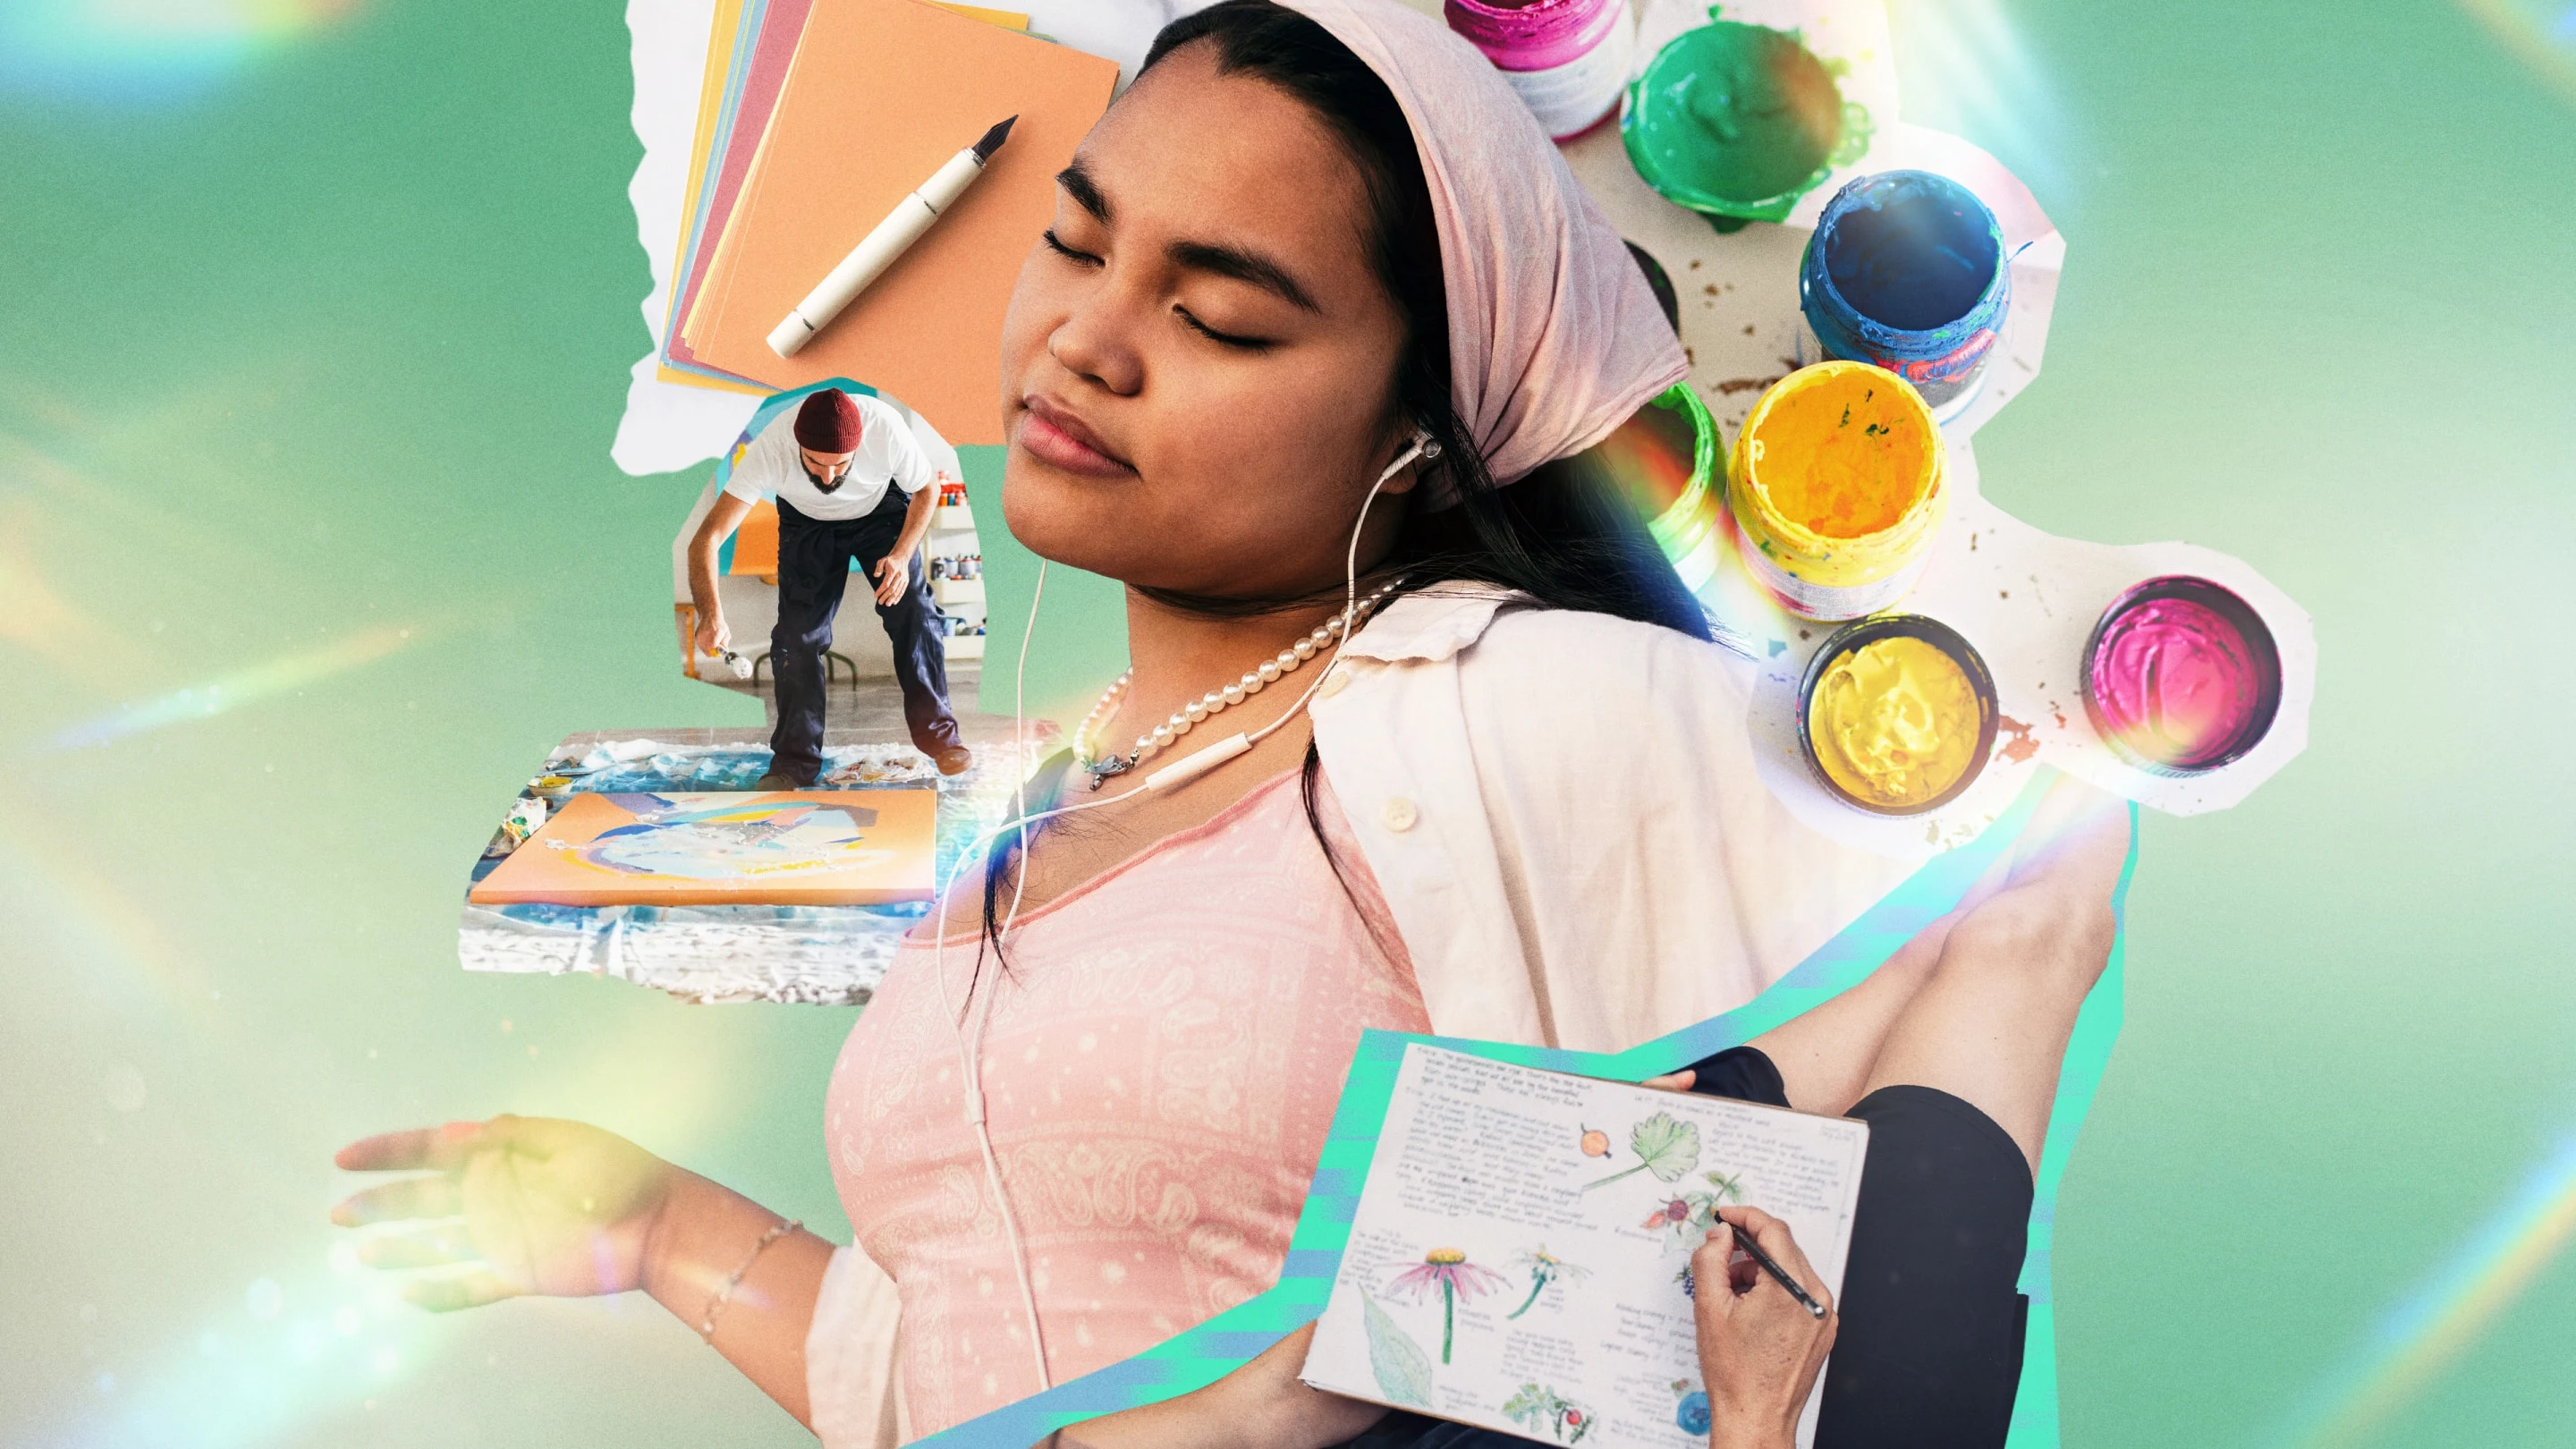 Collage mit einer asiatischen Frau, die Musik hört, umgeben von Aquarellfarben, einer Frau, die Tagebuch führt, einem Mann, der auf eine Leinwand sprüht, und einem Stapel Papier mit Stift.